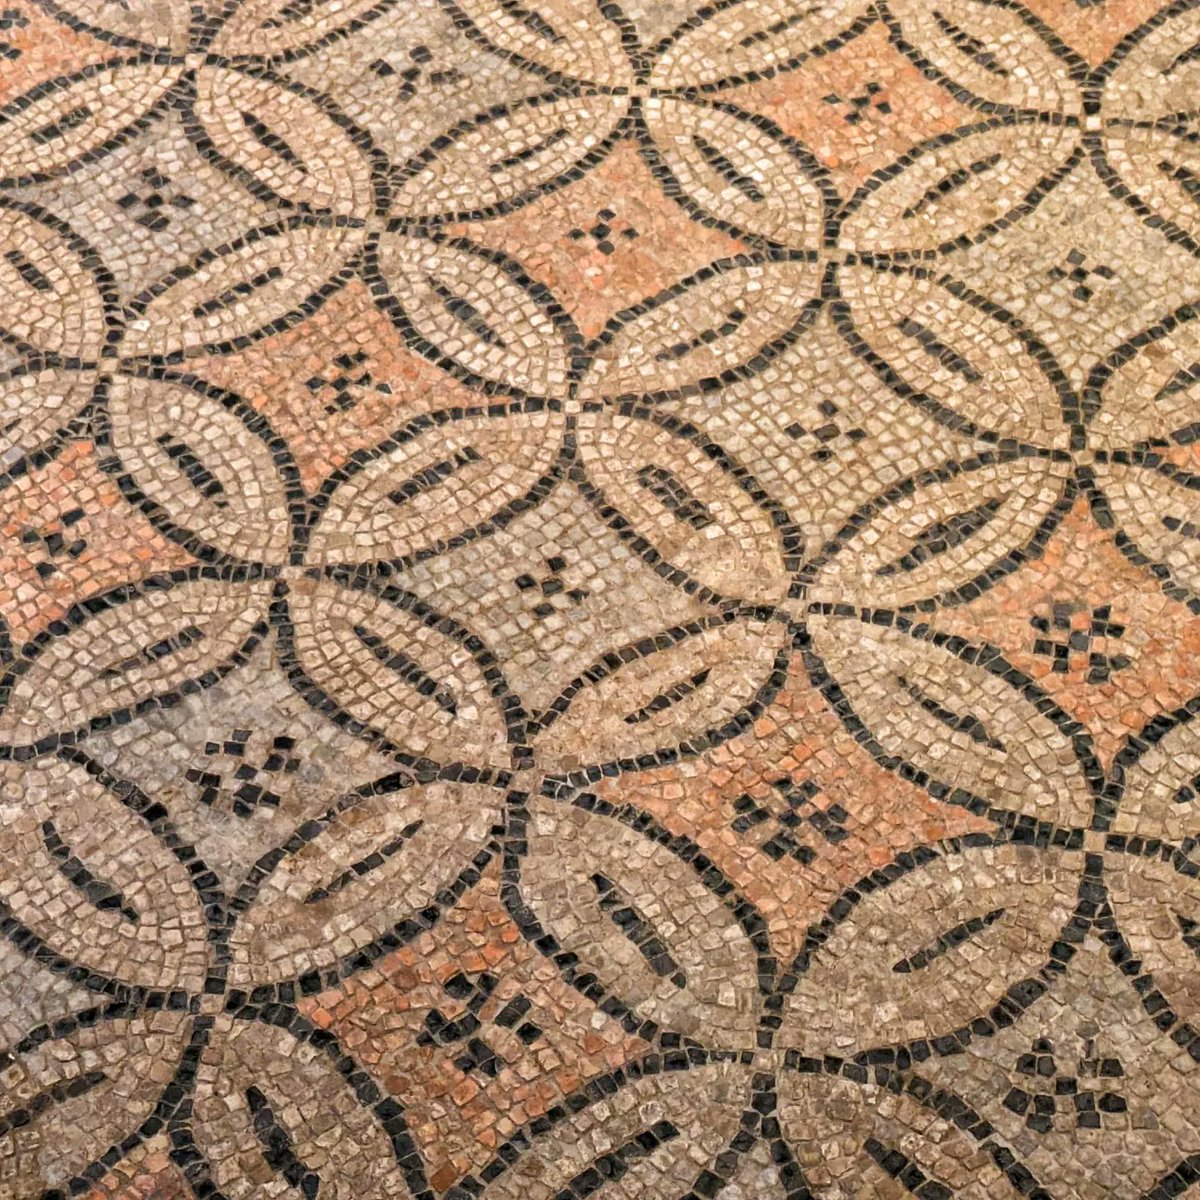 Buona Pasquetta da #Ravenna con i #mosaici della #Domus dei tappeti di pietra: nel grande salone dei ricevimenti, al centro c'è la raffigurazione musicale della #Danza dei Geni delle #Stagioni, in circolo, al suono di un musico (un unicum) 🤩
#visitravenna #visititaly